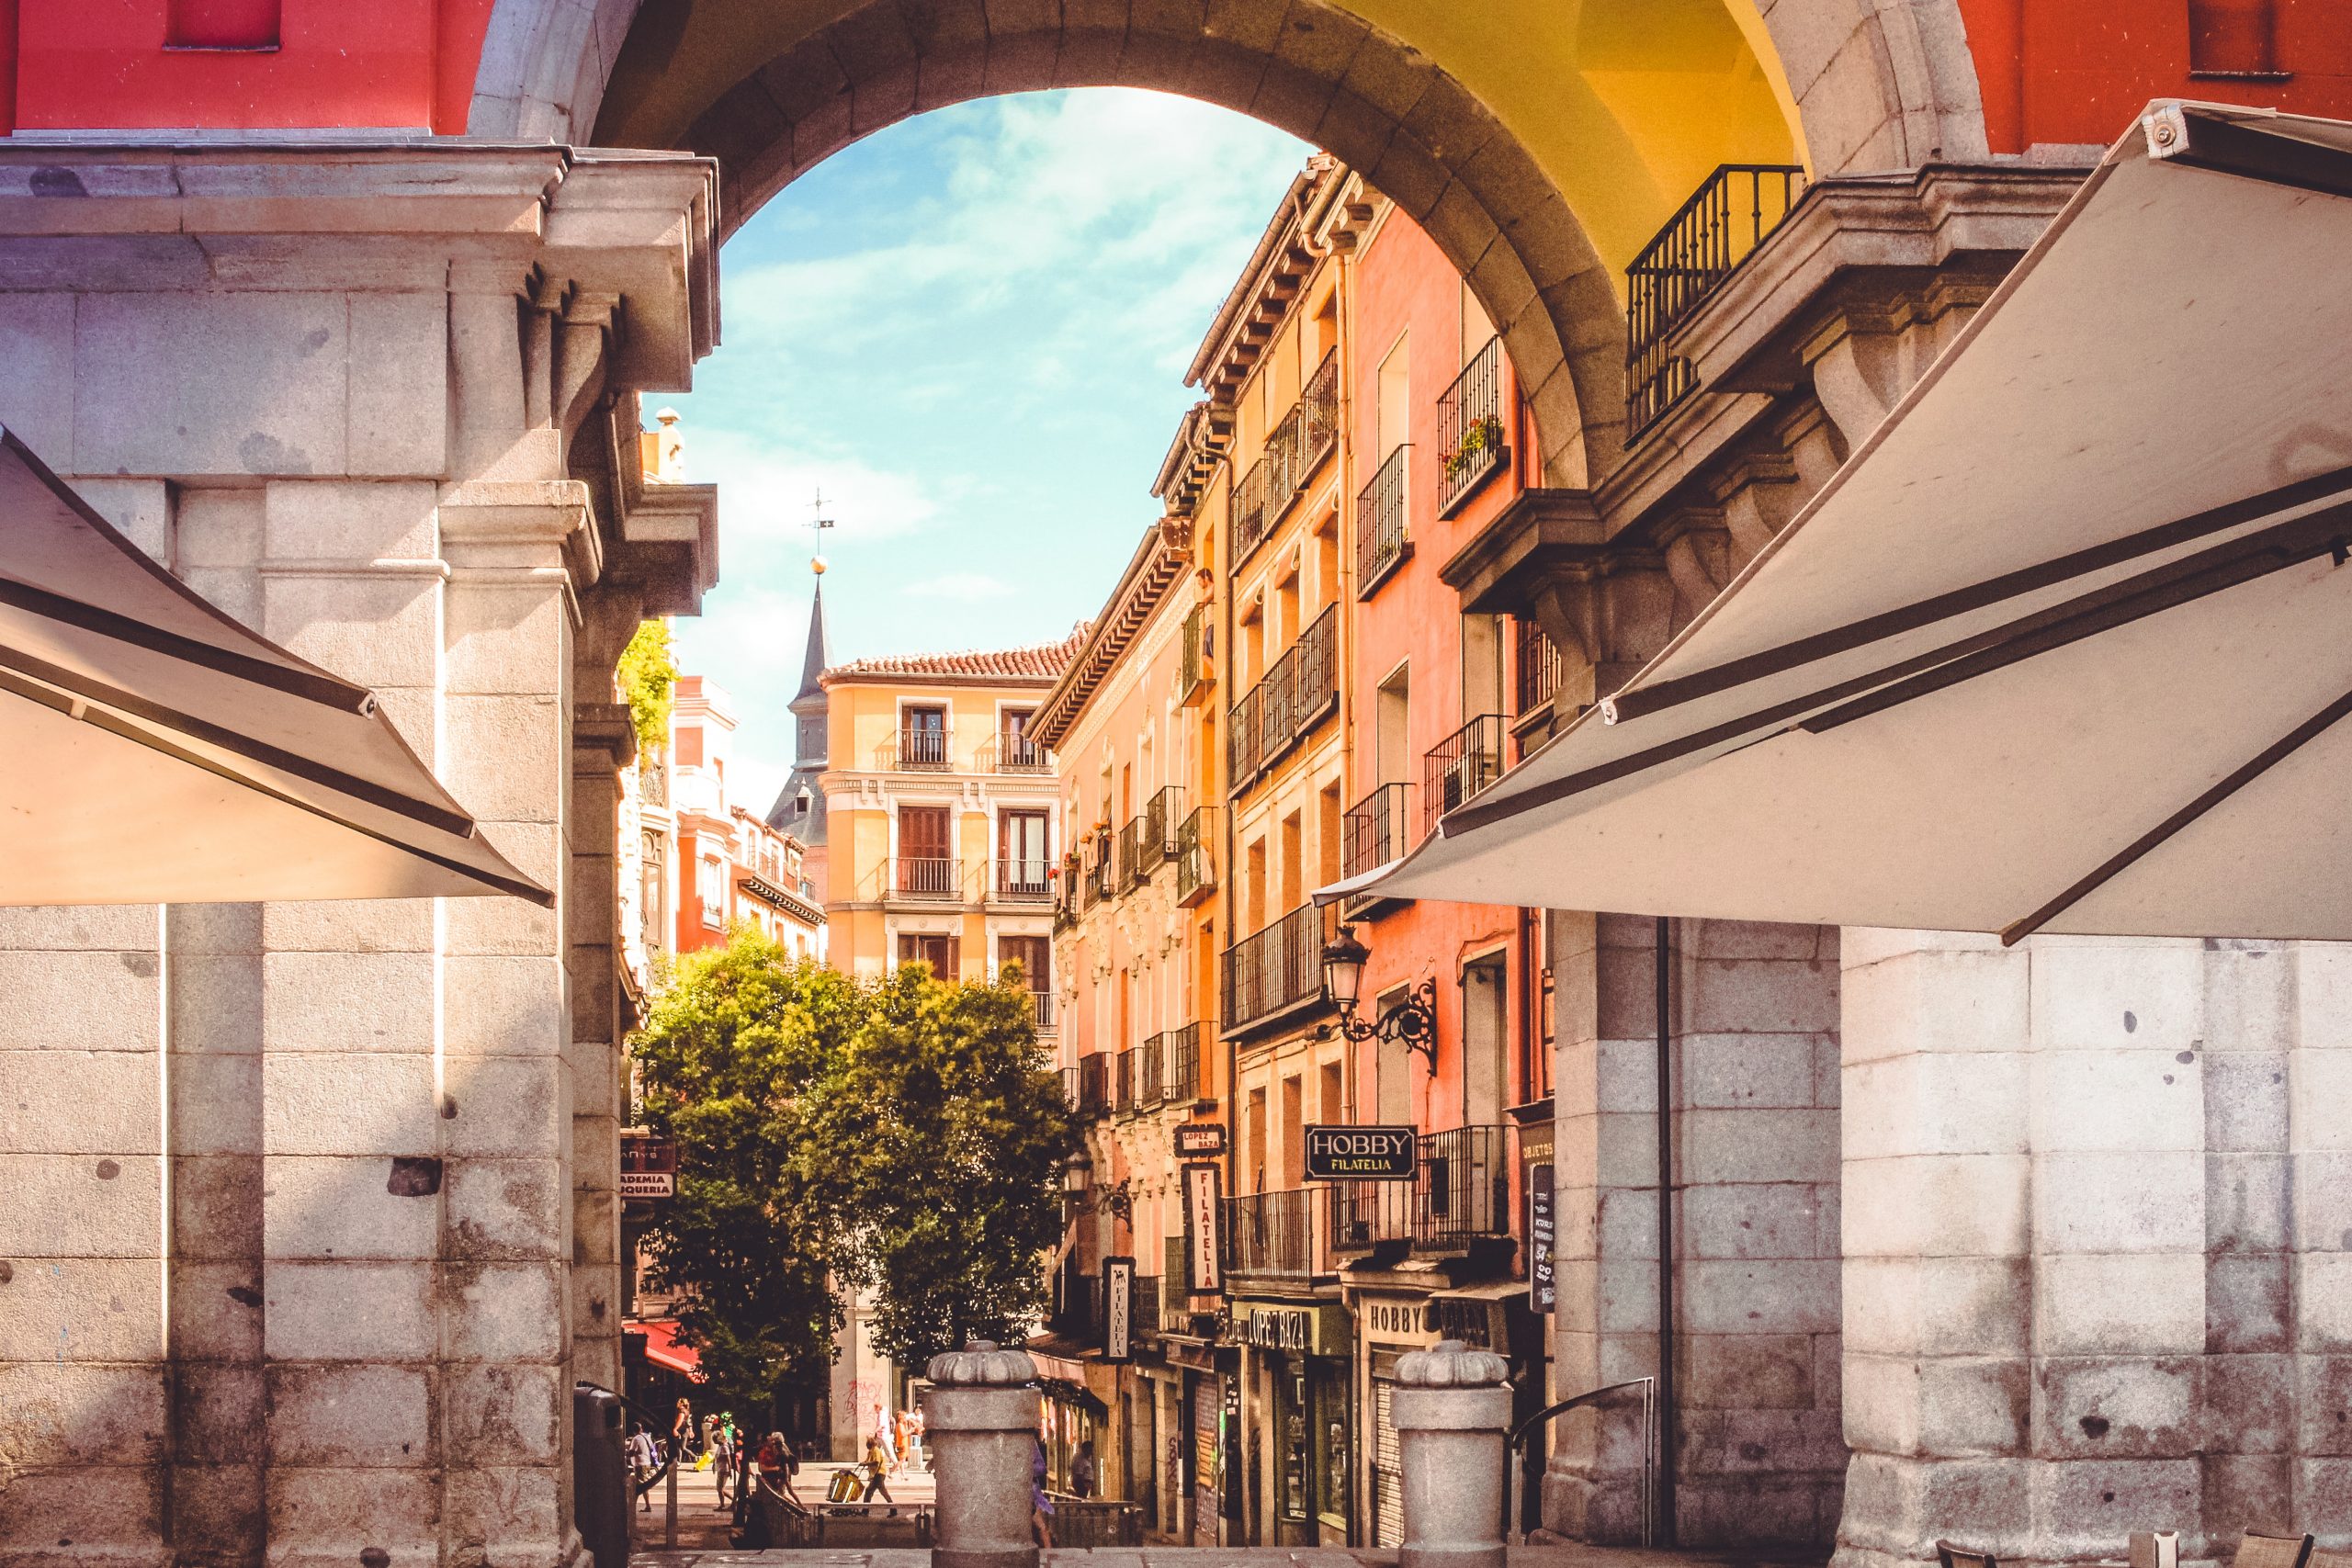 Co warto zobaczyć będąc na wycieczce w Madrycie?